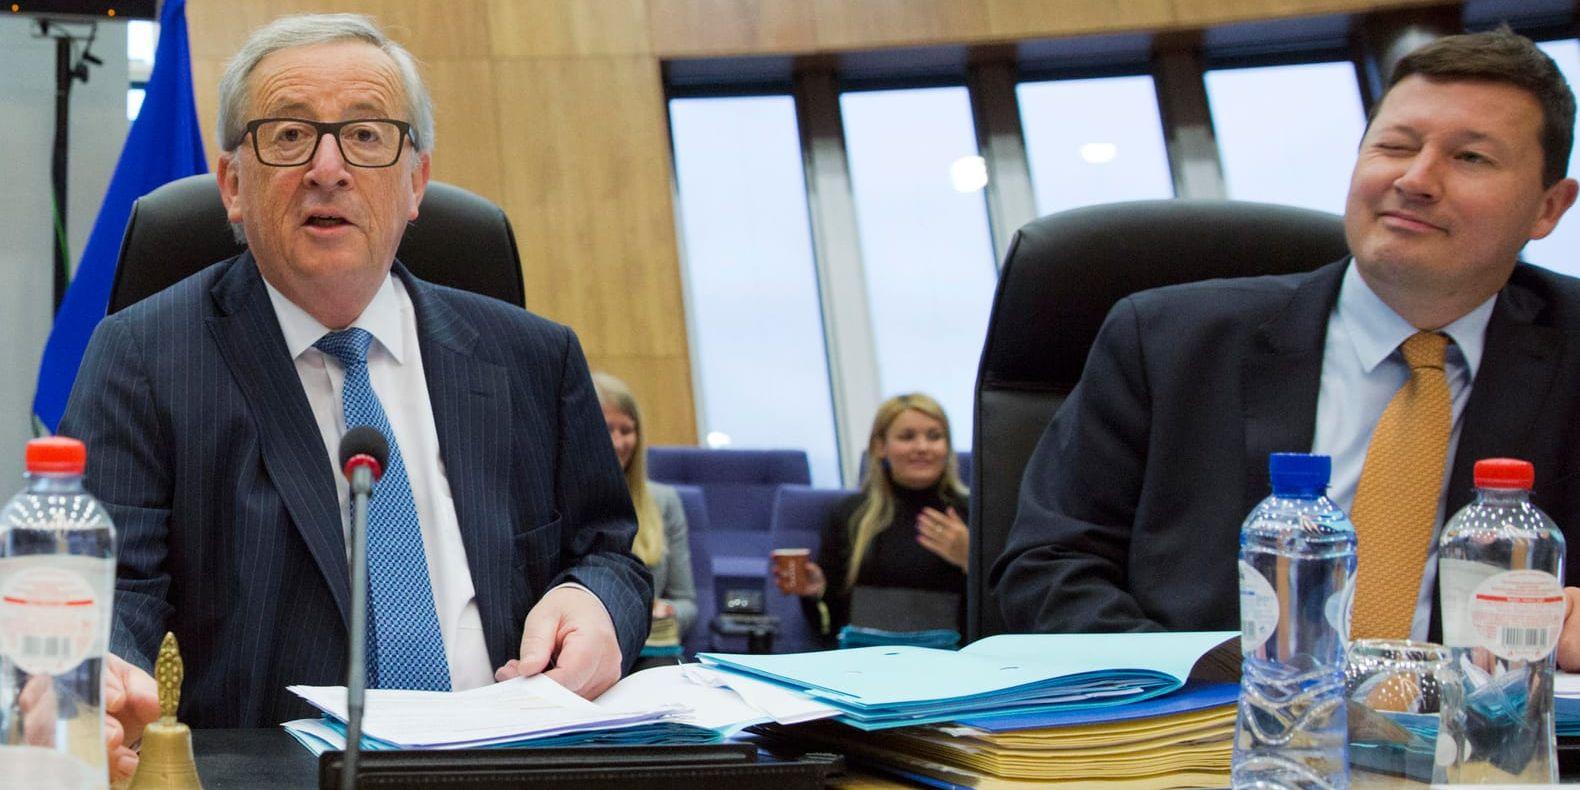 Martin Selmayr (till höger) är mäktig stabschef för EU-kommissionens ordförande Jean-Claude Juncker och blir ännu mäktigare när han från den 1 mars tillträder som kommissionens generalsekreterare. Arkivfoto.